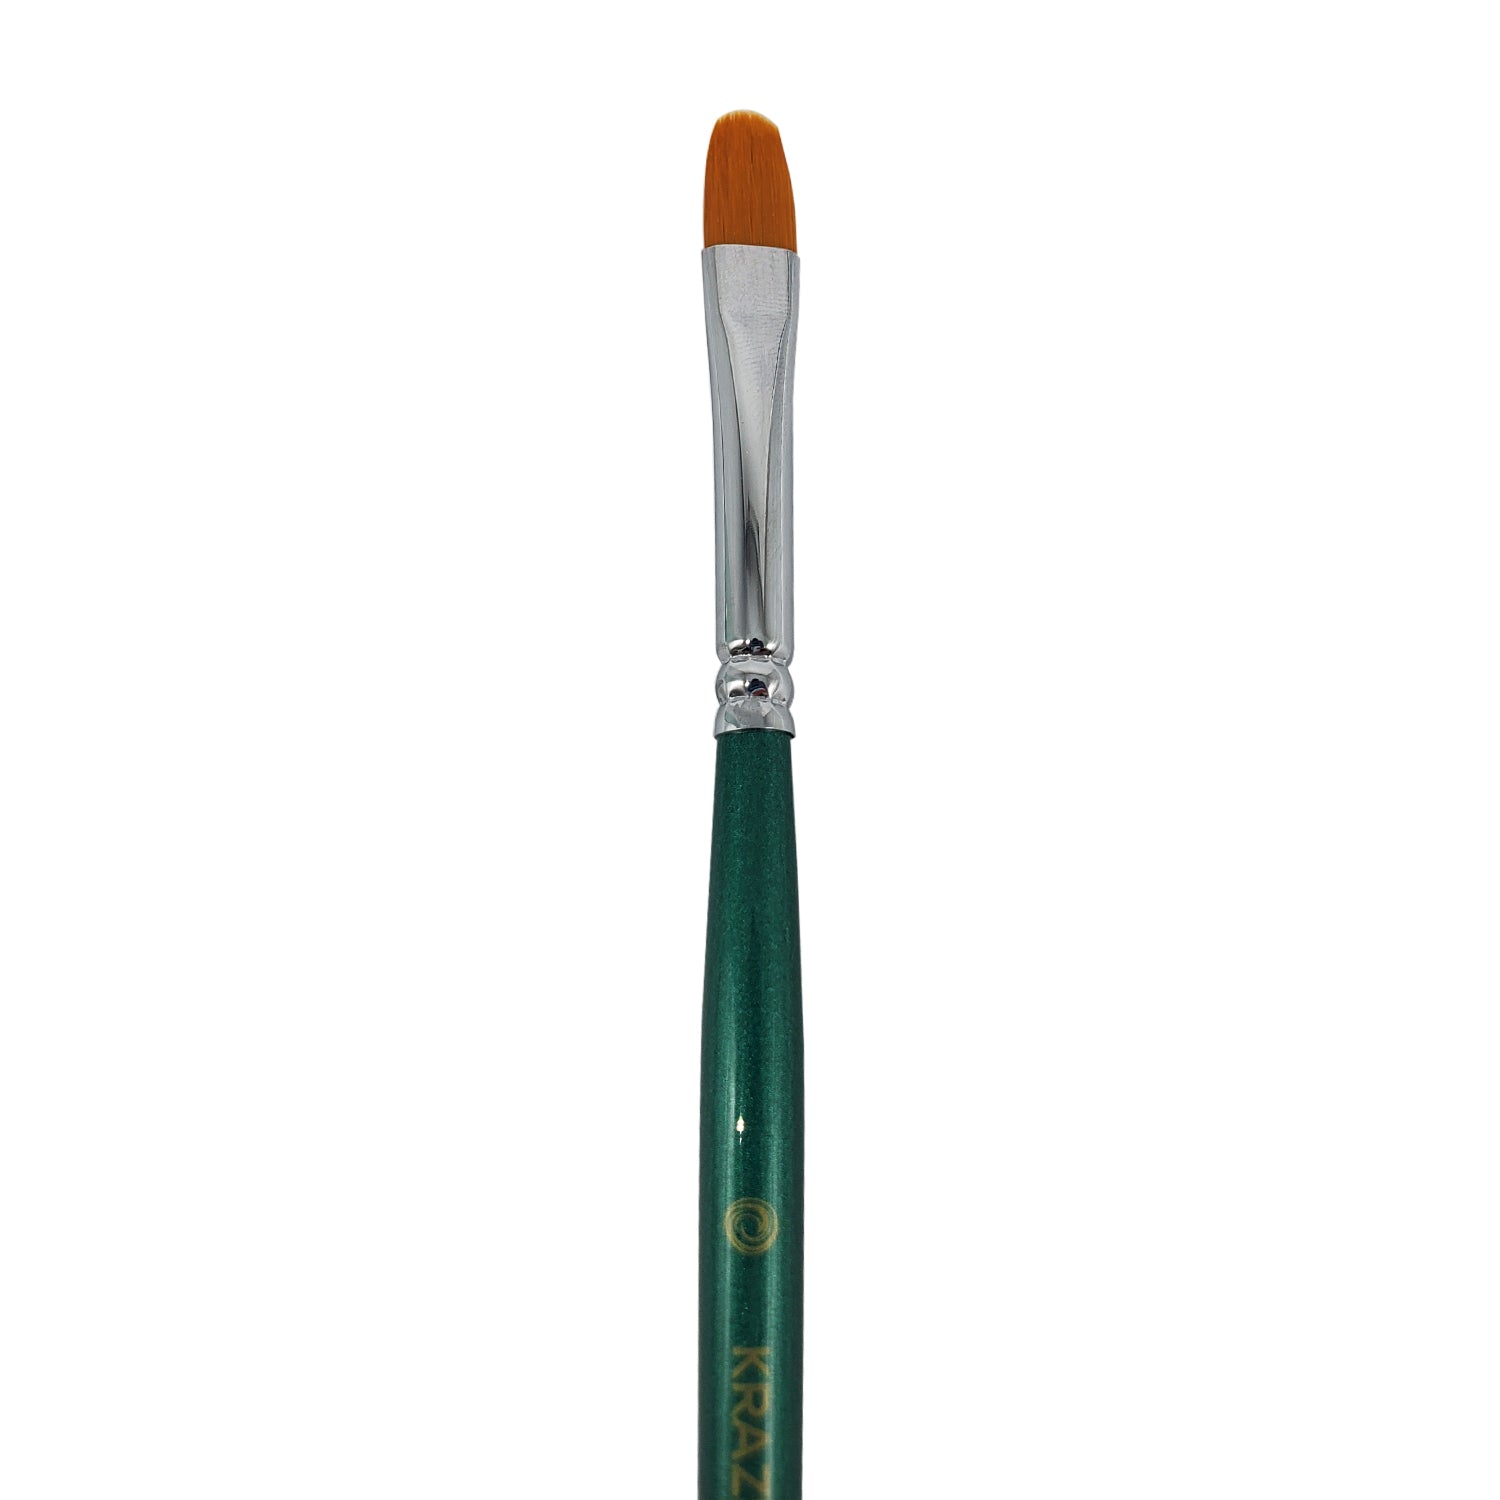 Kraze FX Filbert Brush - Small, Professional Face Paint Brushes